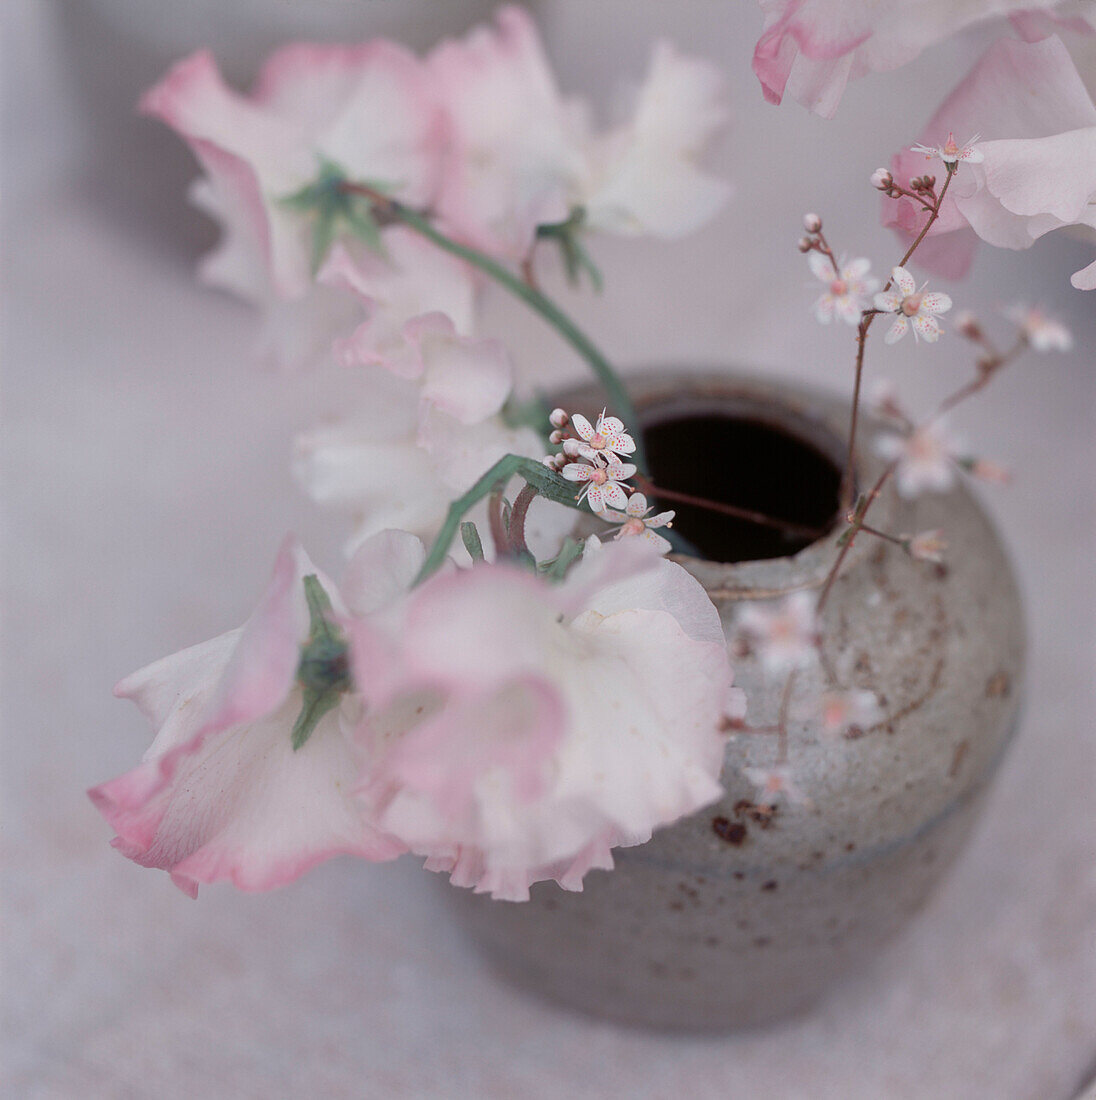 Detail einer Blumenauslage in einer Vase mit rosa Erbsen und Wildblumen